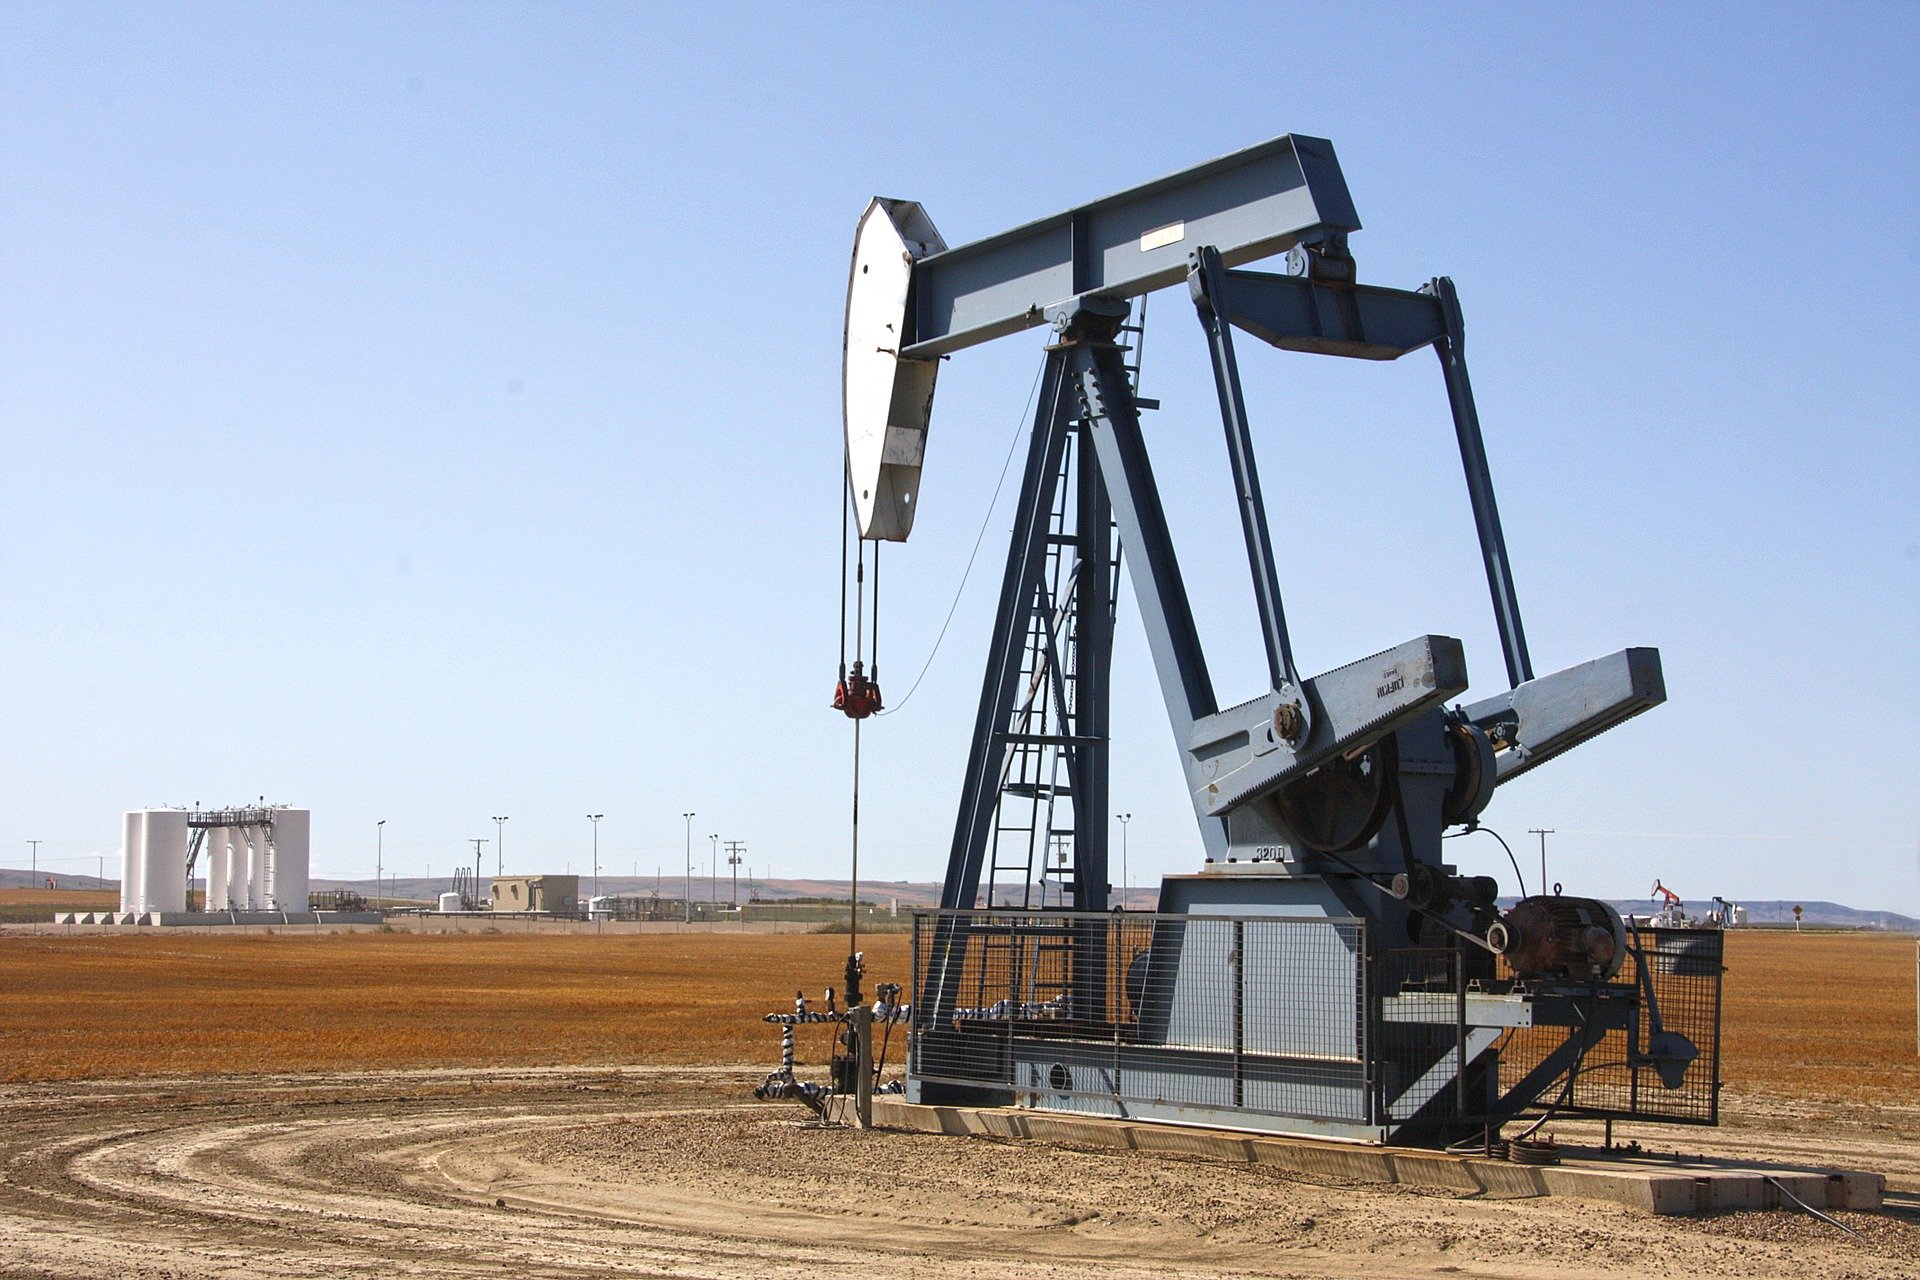 Brent petrolün varil fiyatı 109,25 dolar